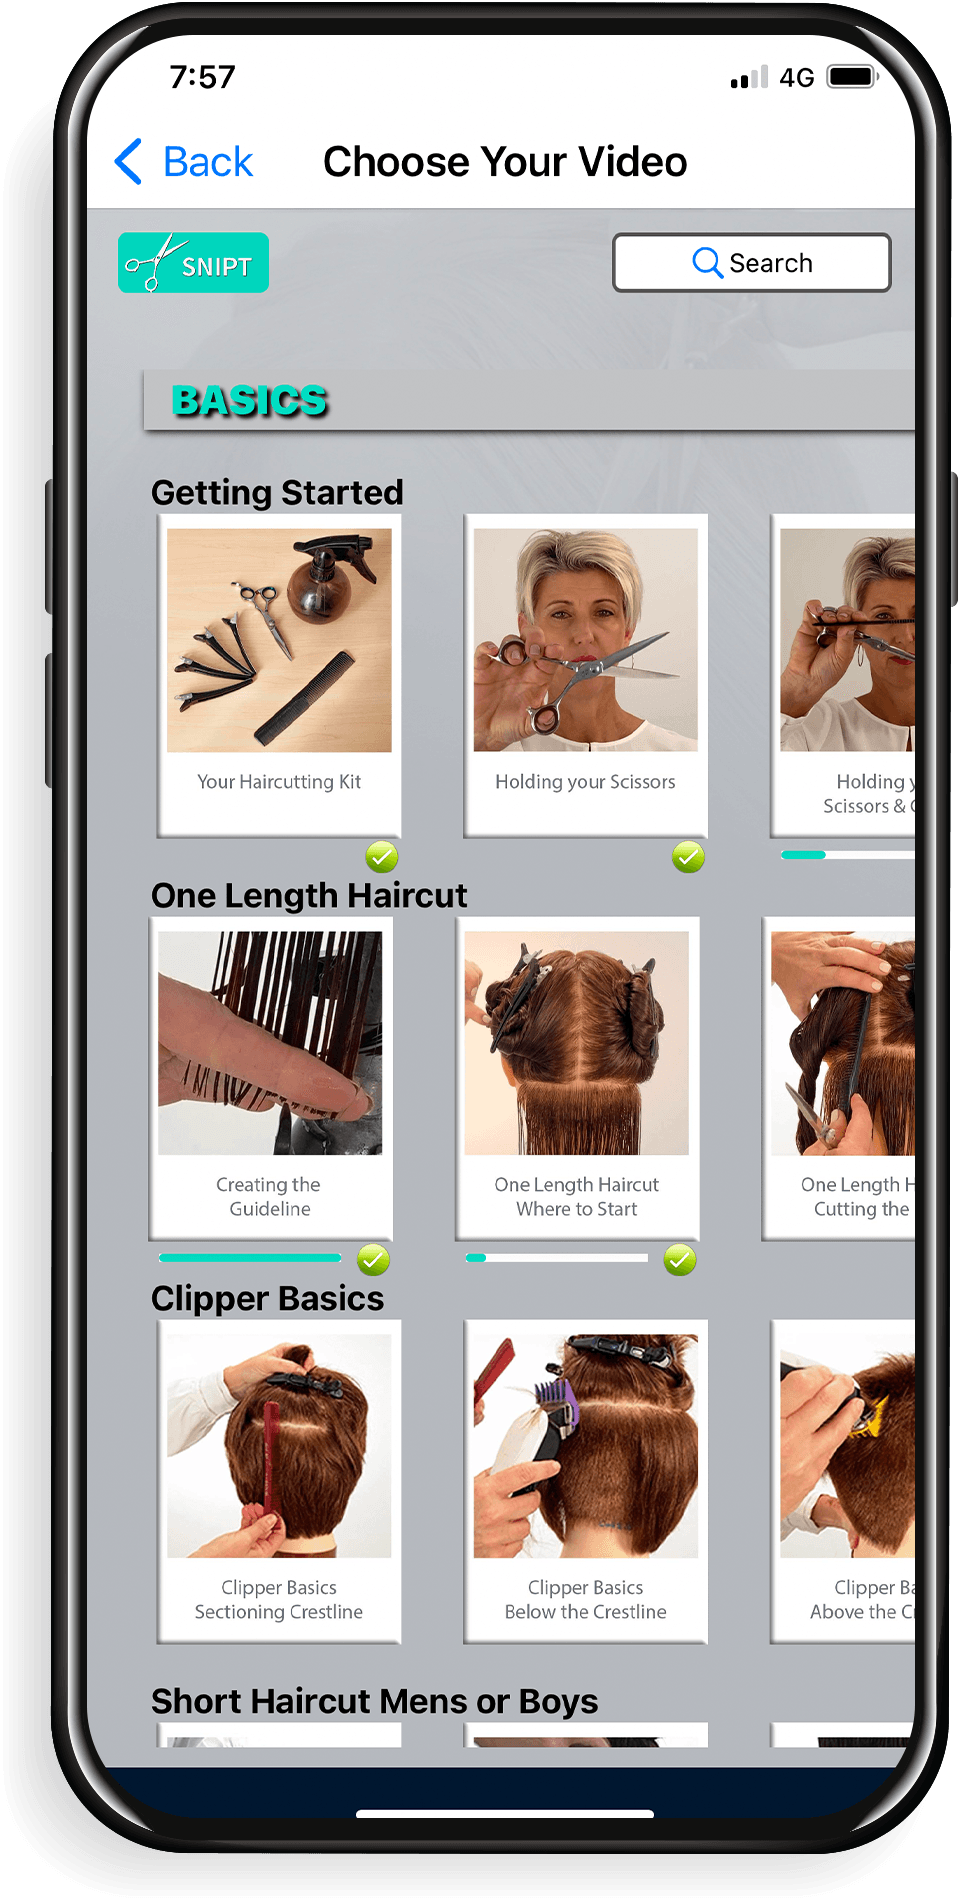 Snipt haircutting app. Basic Haircutting app.